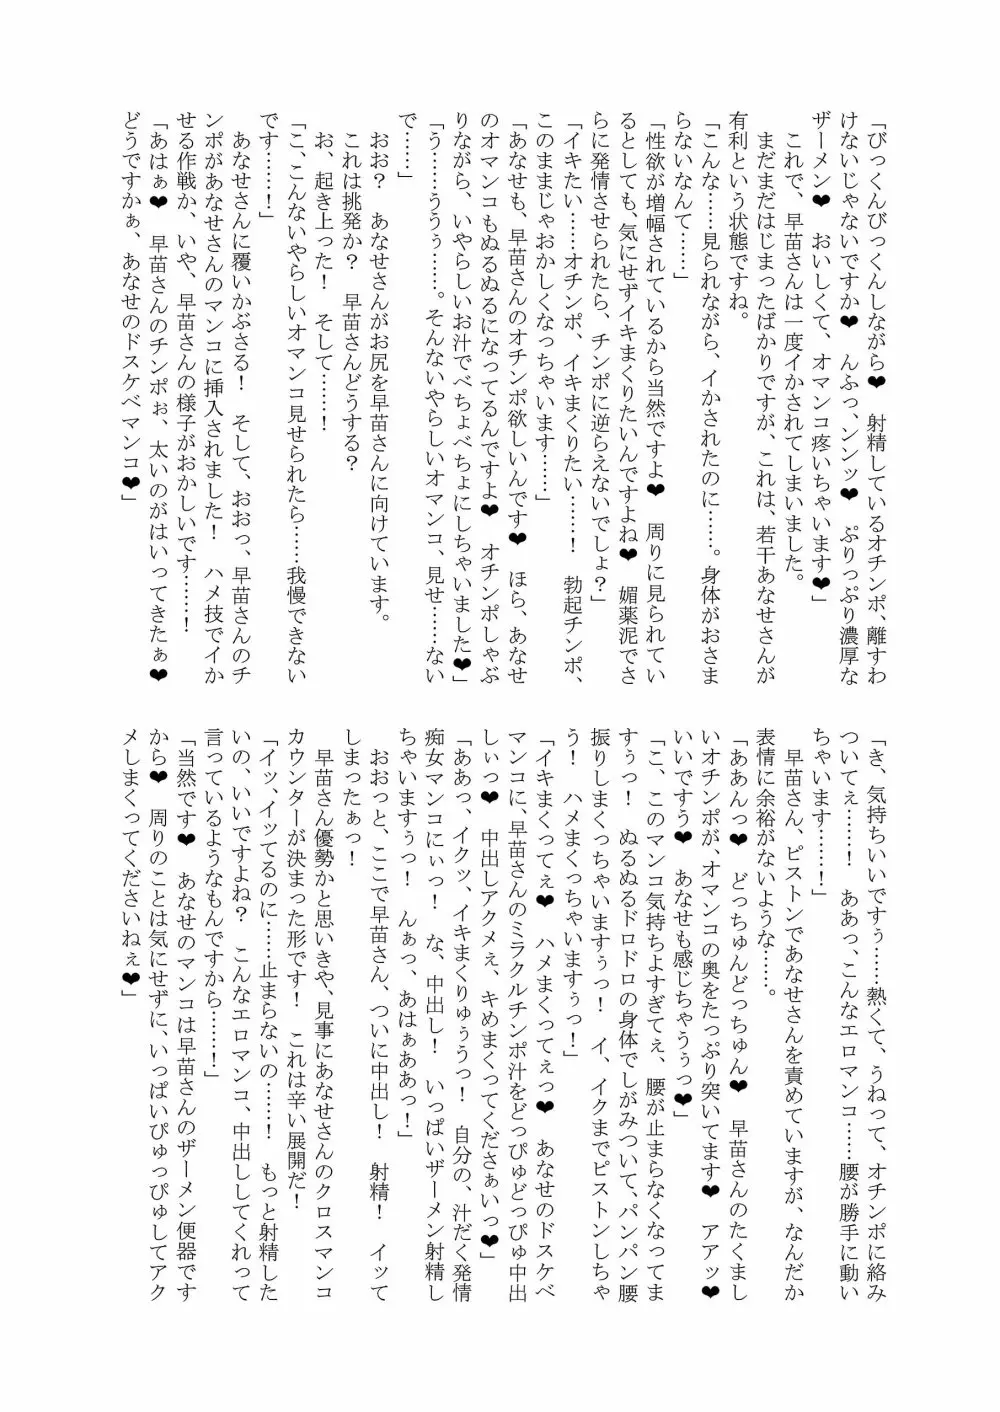 幻想郷フタナリチンポレスリング合同誌2 GFCW Extreme Joker 115ページ